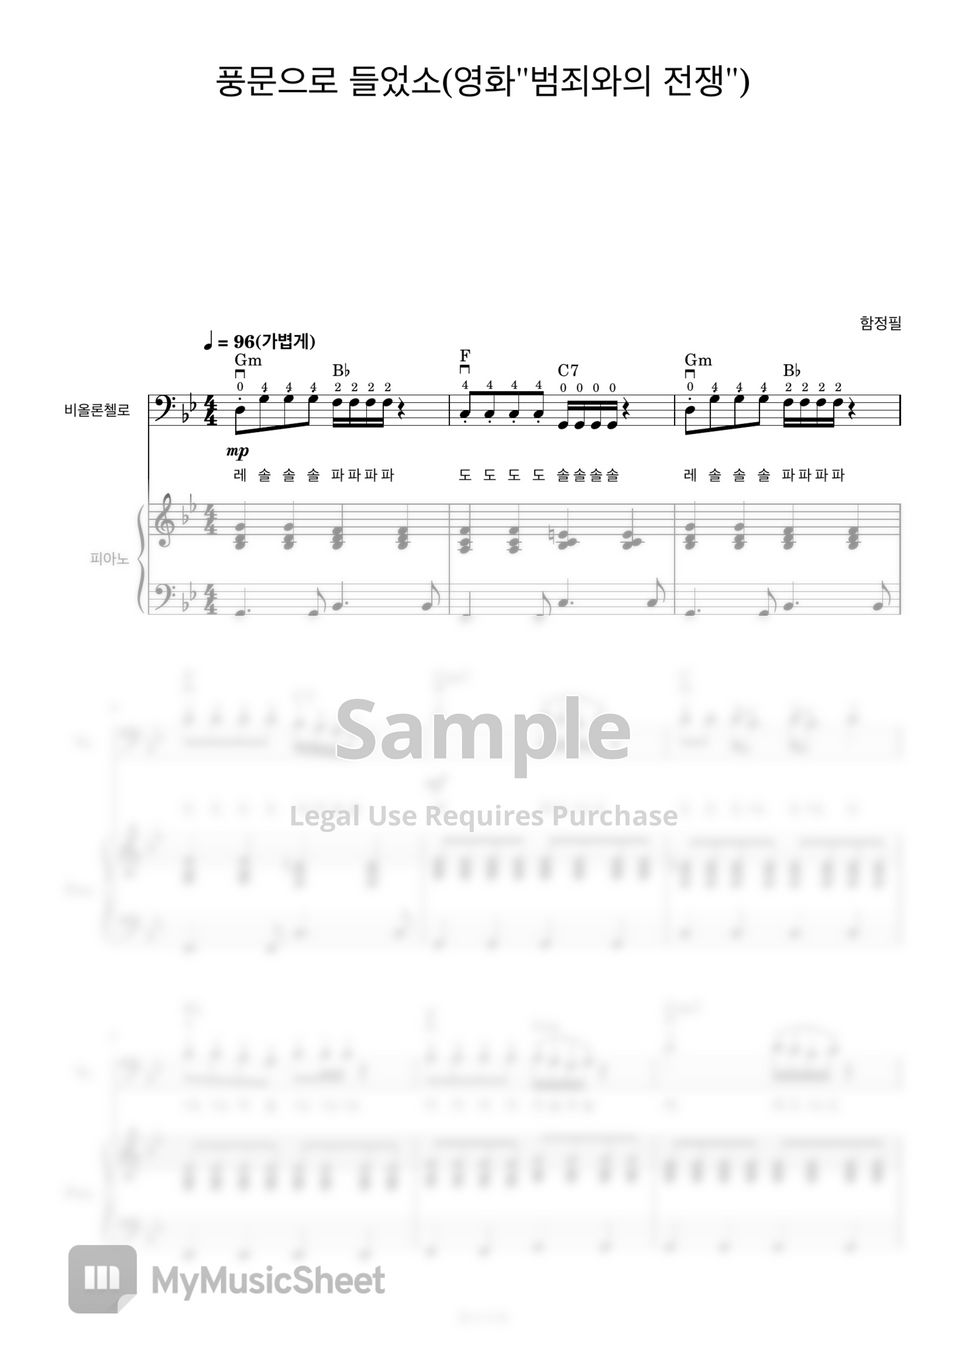 함정필 - 풍문으로 들었소 (첼로+피아노, 계이름 & 손가락 번호 포함) by 첼로마을